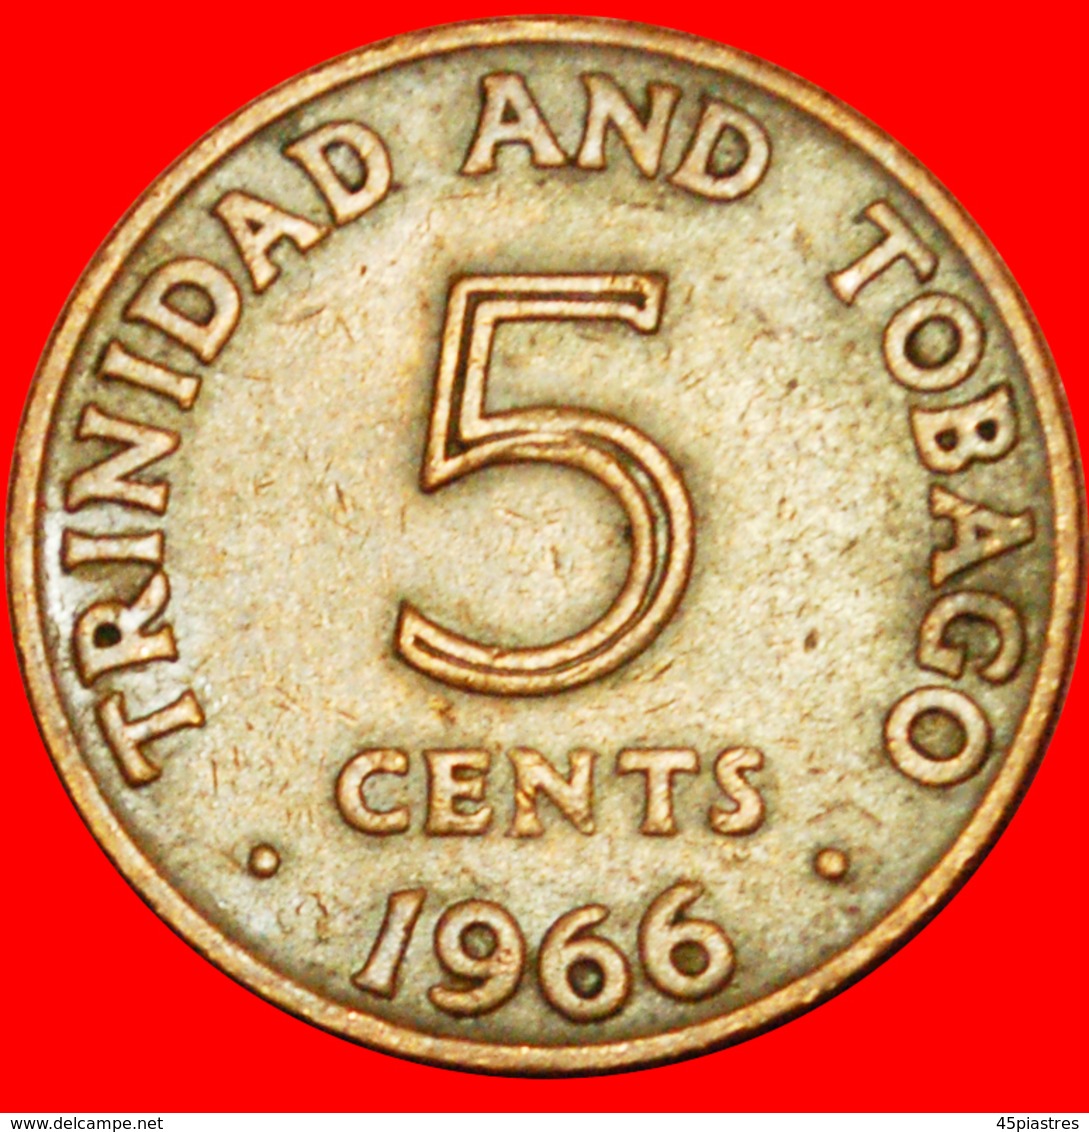 # GREAT BRITAIN (1966-1972): TRINIDAD AND TOBAGO ★ 5 CENTS 1966! LOW START ★ NO RESERVE! - Trinidad En Tobago